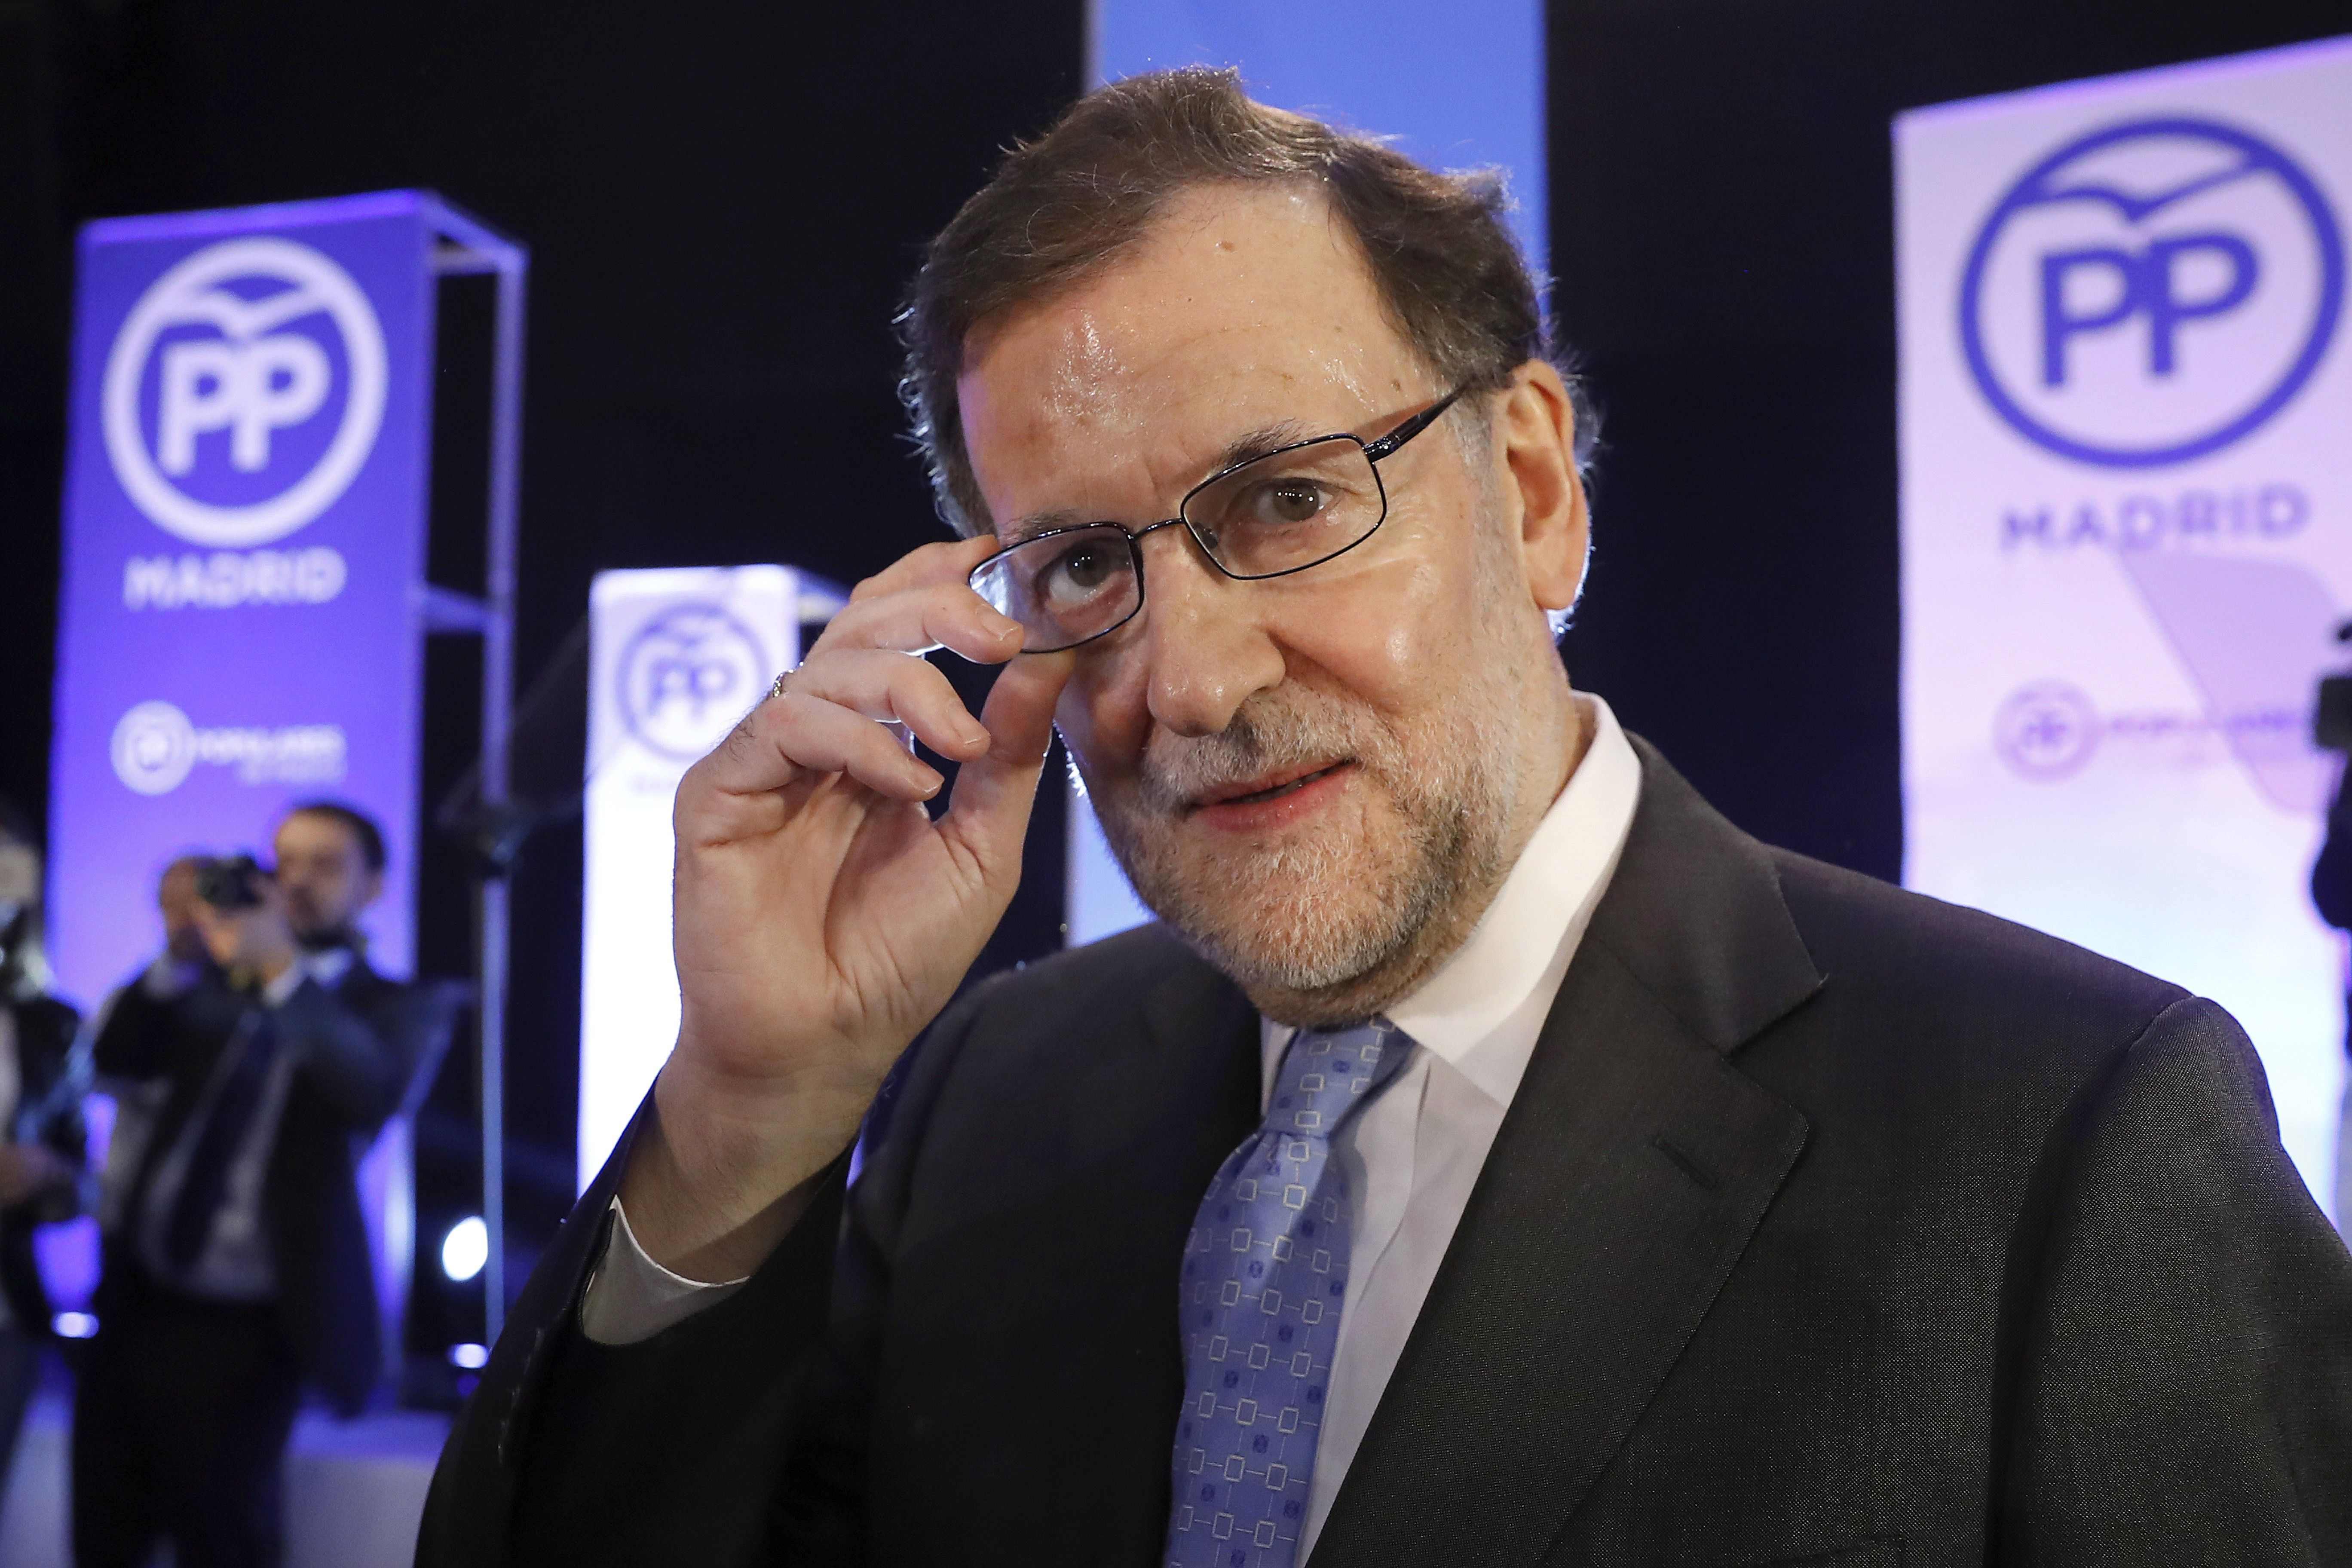 L'últim lapsus de Rajoy: "Ja preparant les properes eleccions"